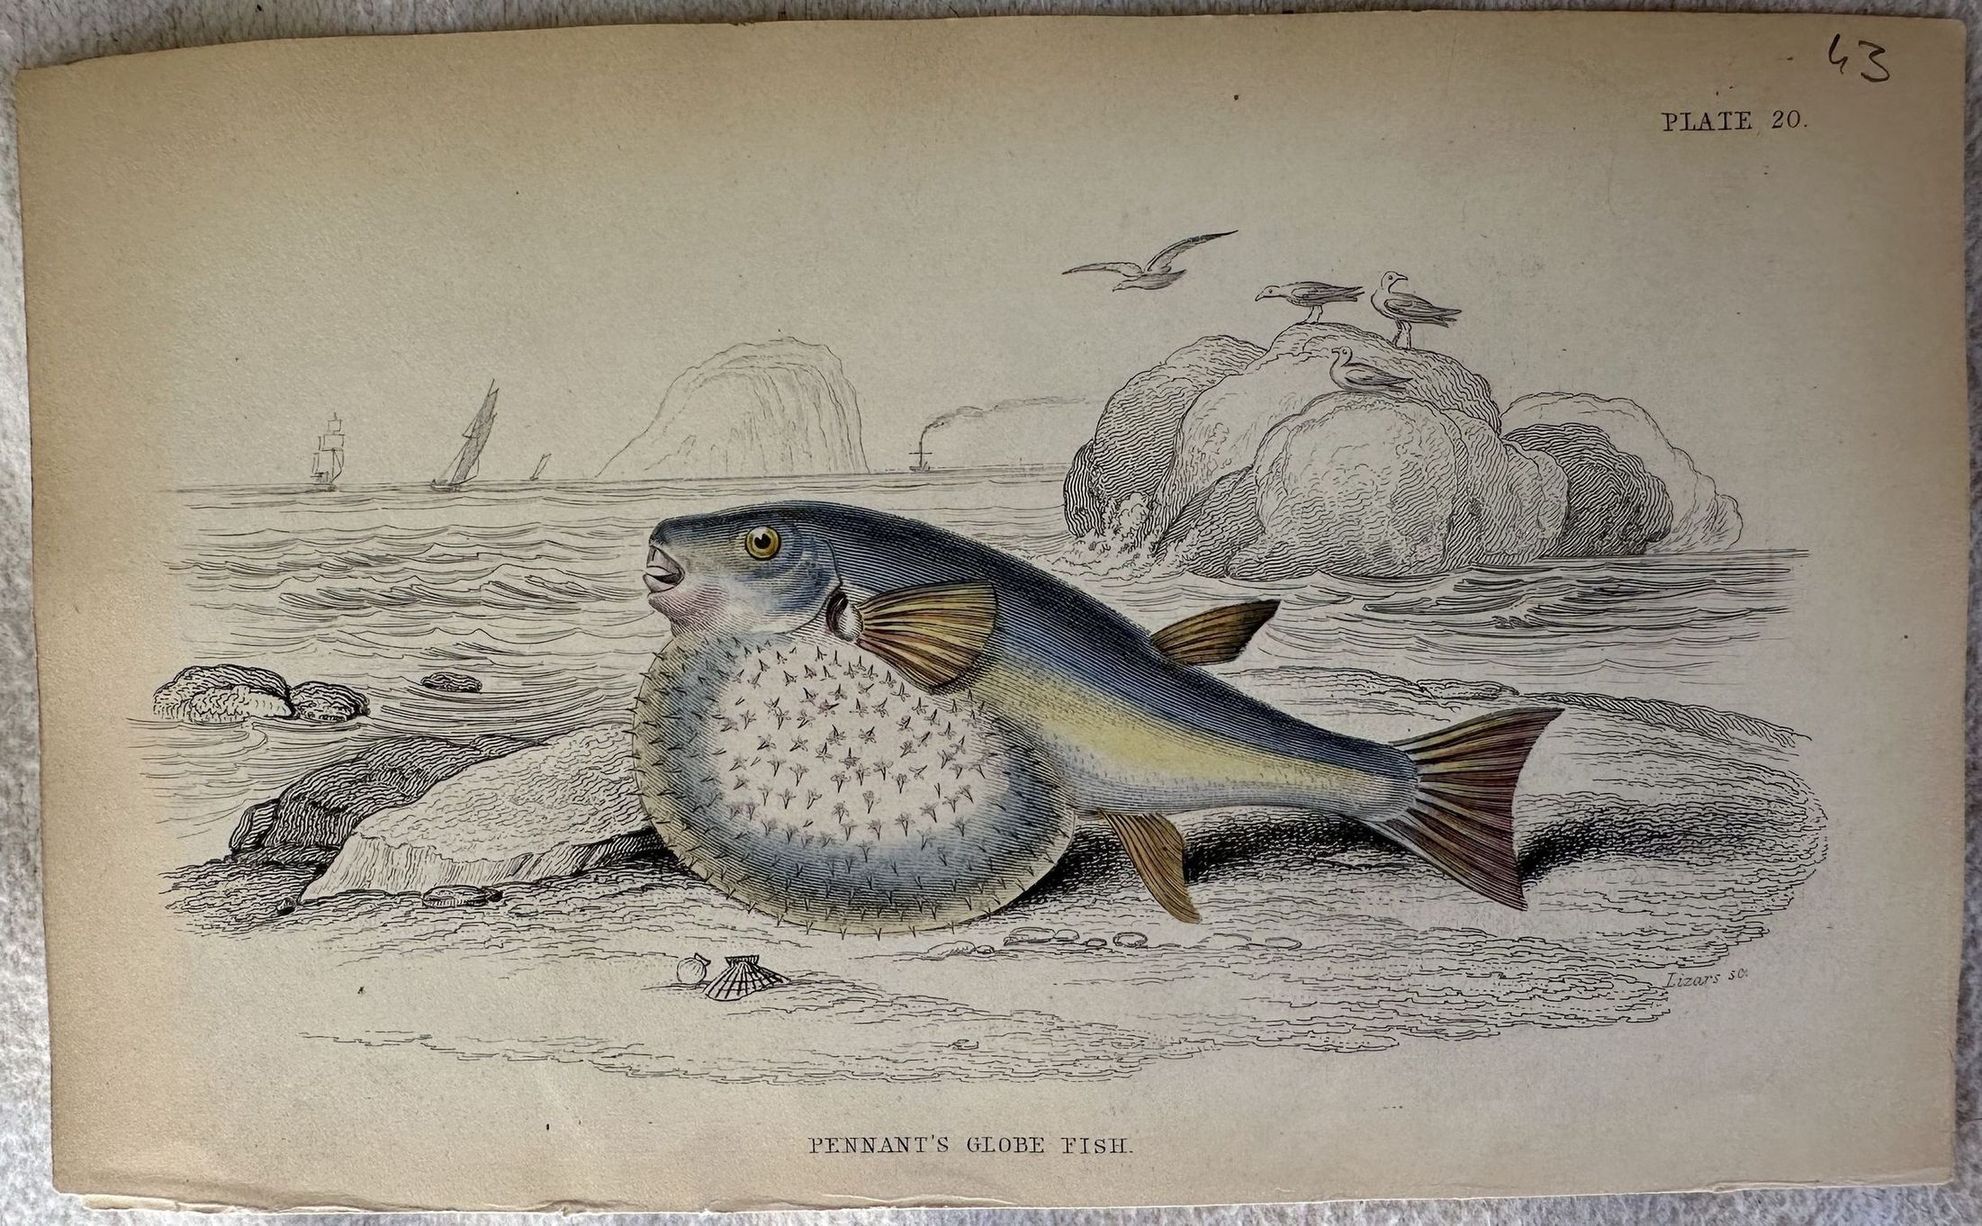 PENNANT'S GLOBE FISH (Pesce globo di Pennant)